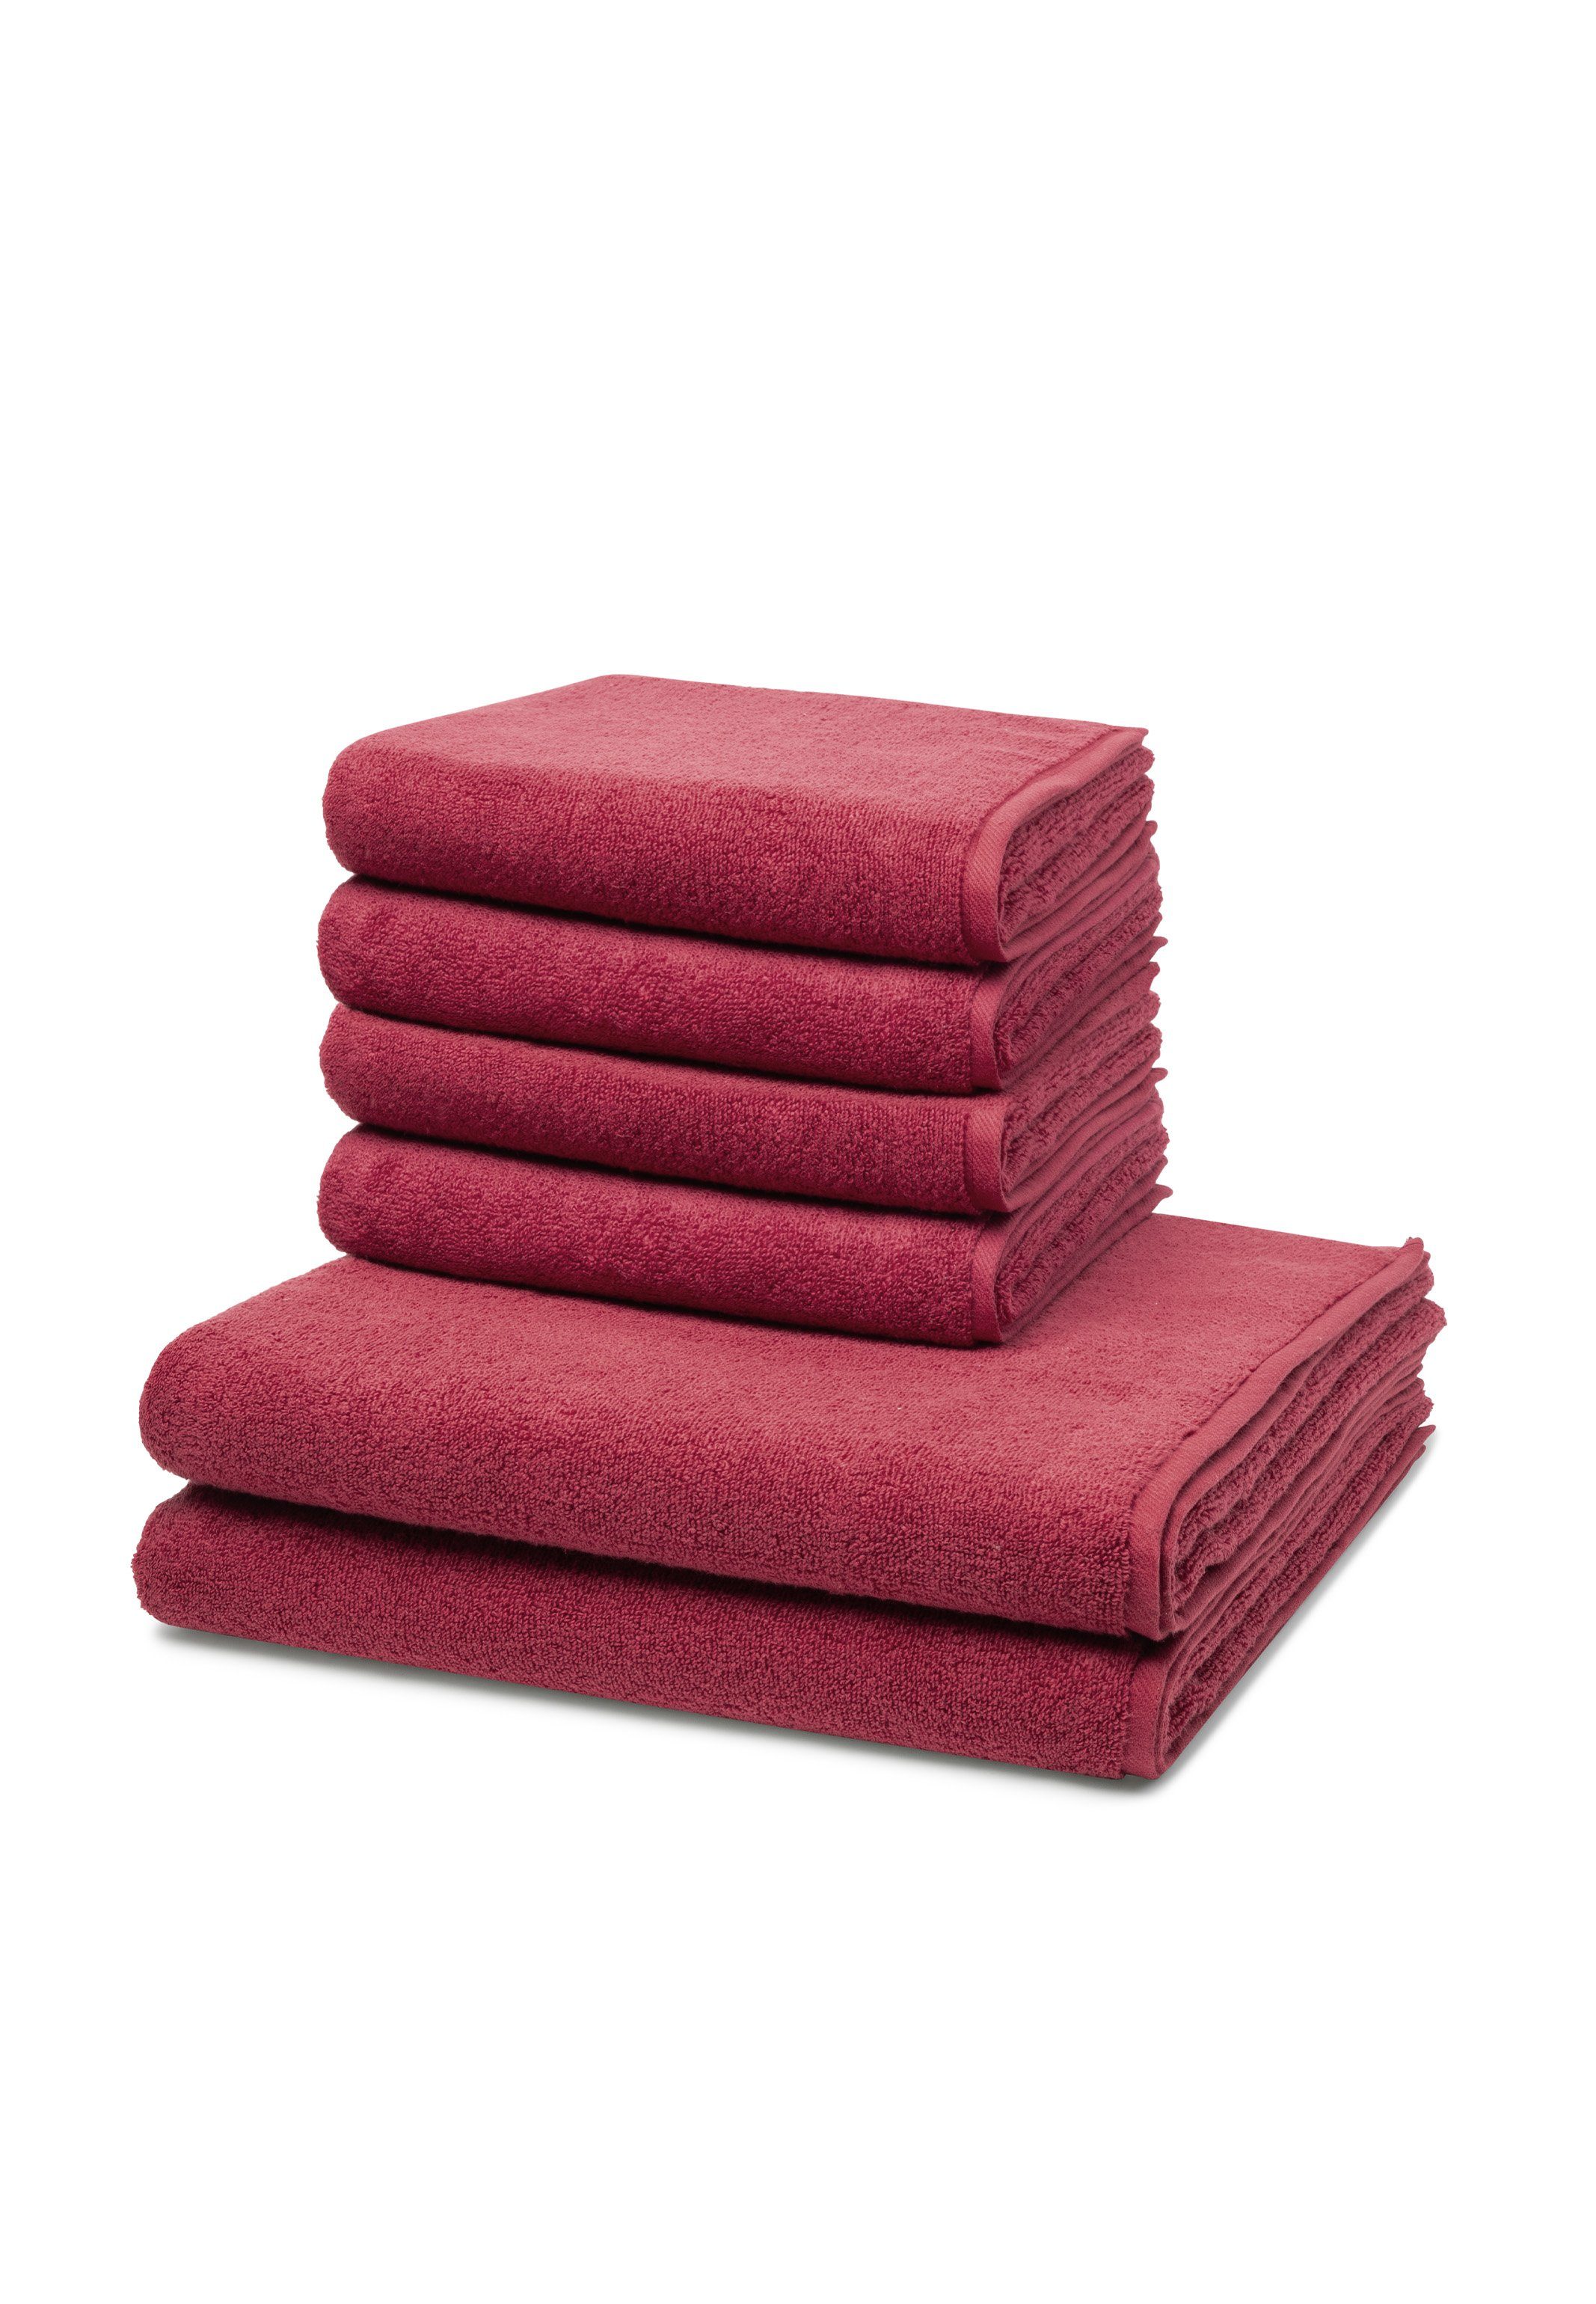 Rote Handtuch-Sets online kaufen | OTTO